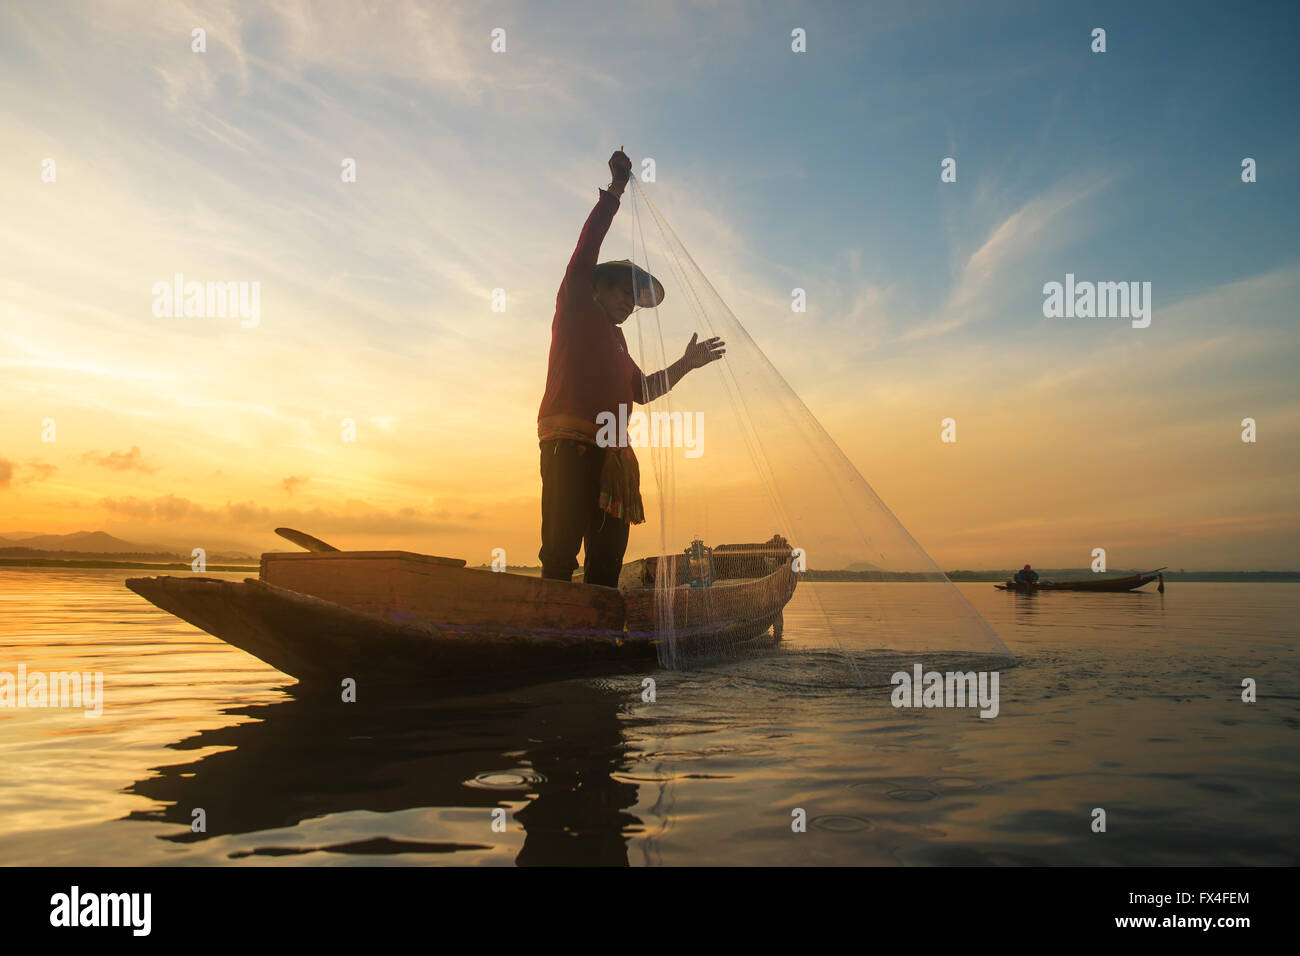 Fisherman fishing at lake in Morning, Thailand. Stock Photo